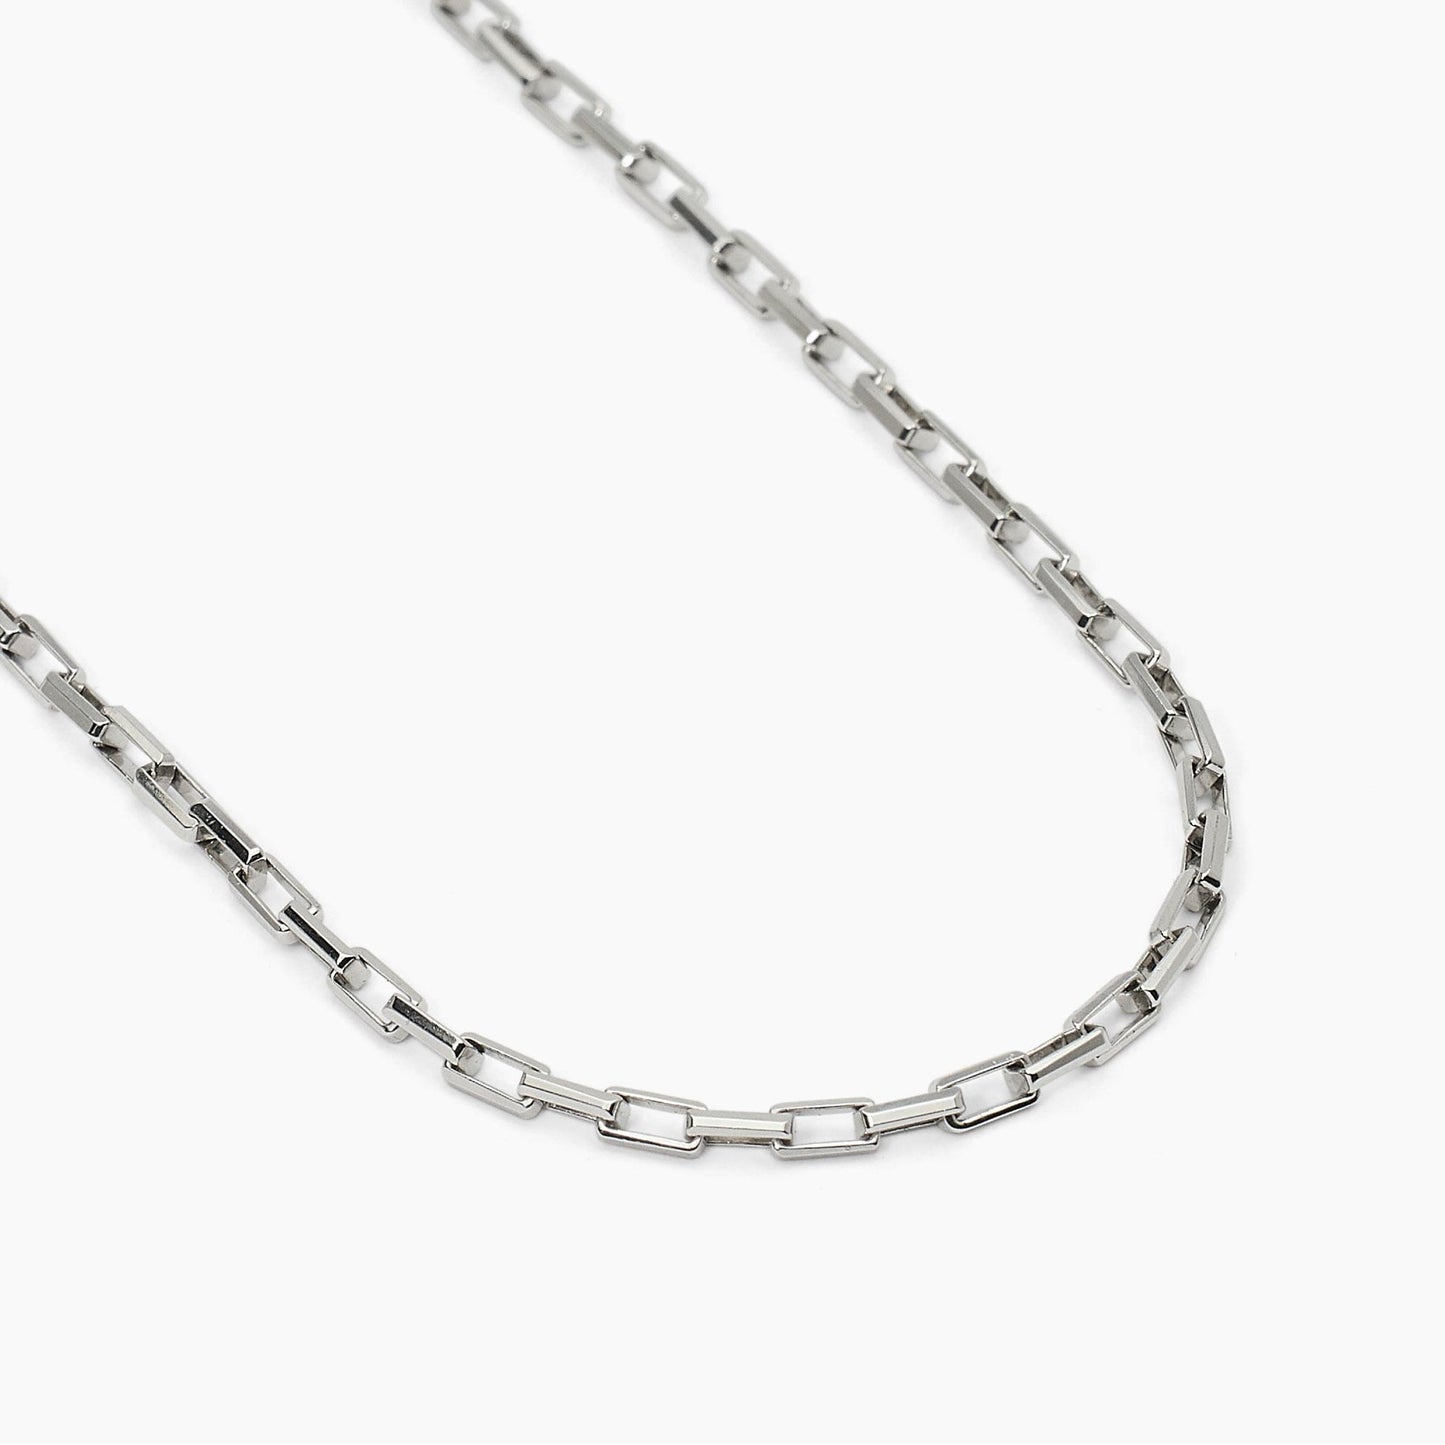 MABINA UOMO - Collana in argento con catena allungata